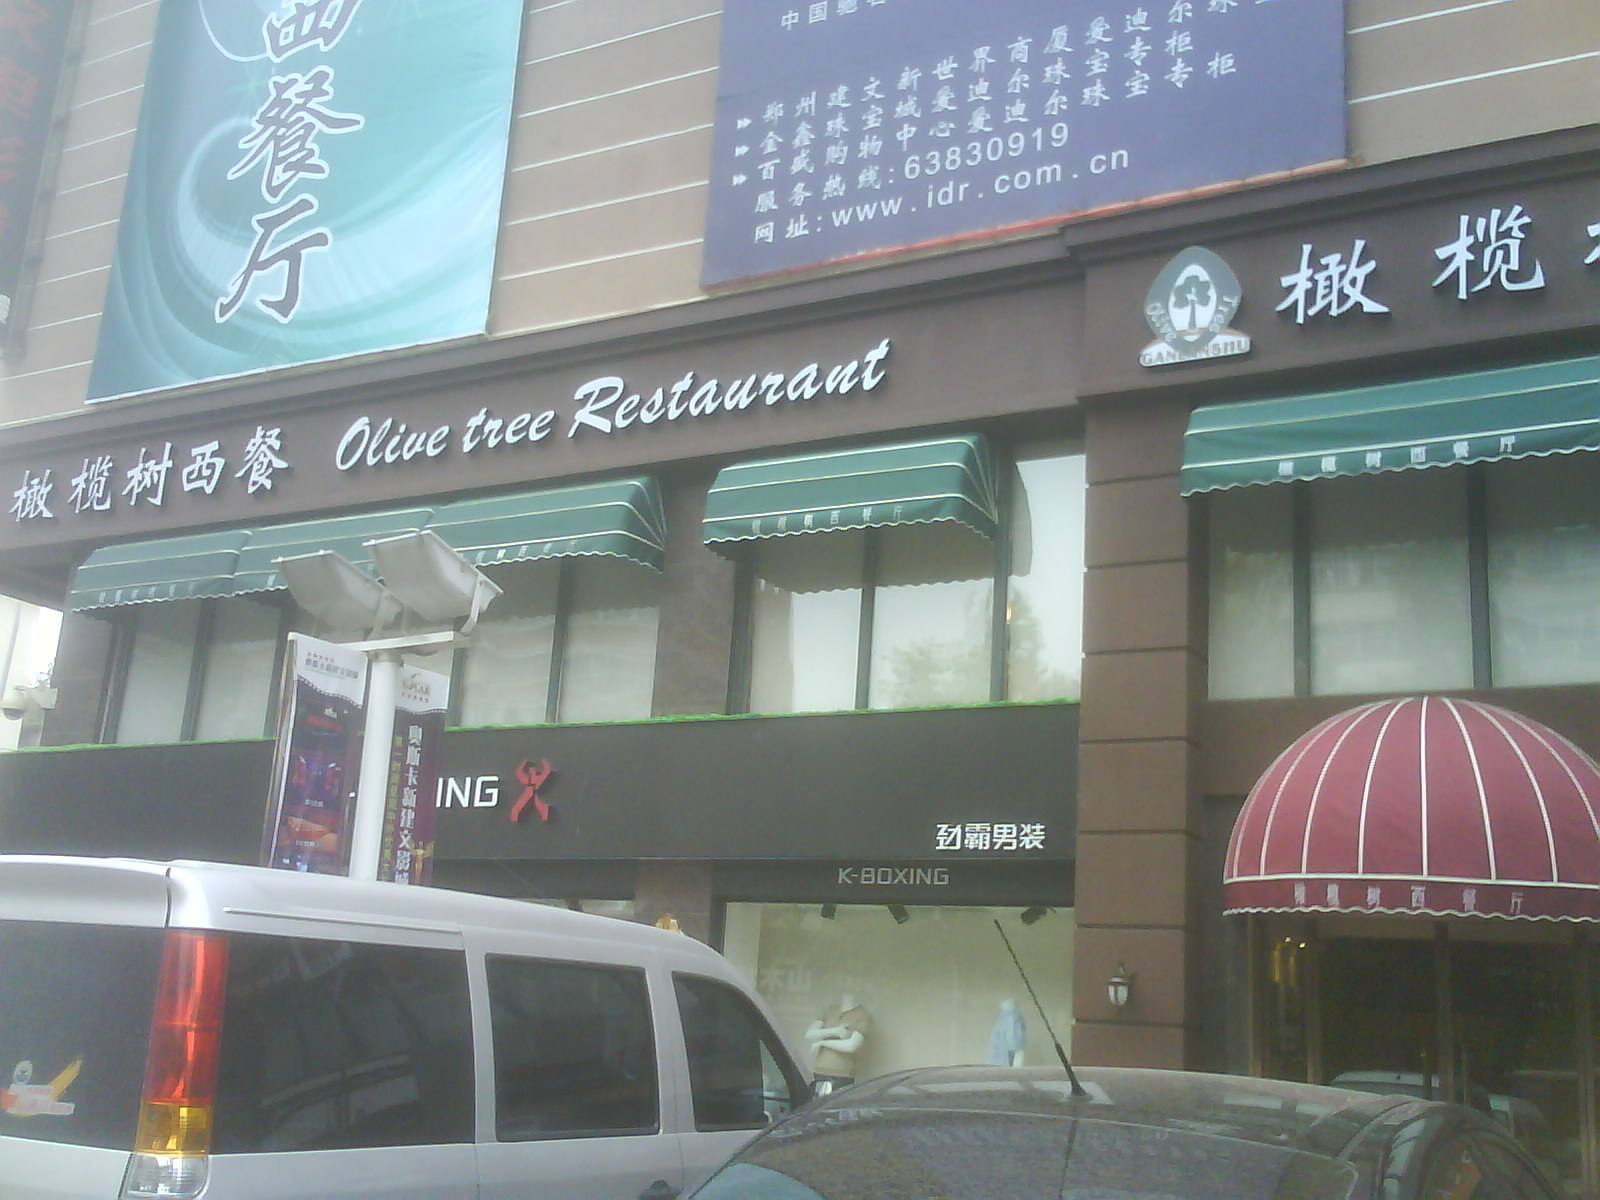 刷招商银行信用卡享郑州市橄榄树西餐厅9折优惠,卡宝宝网